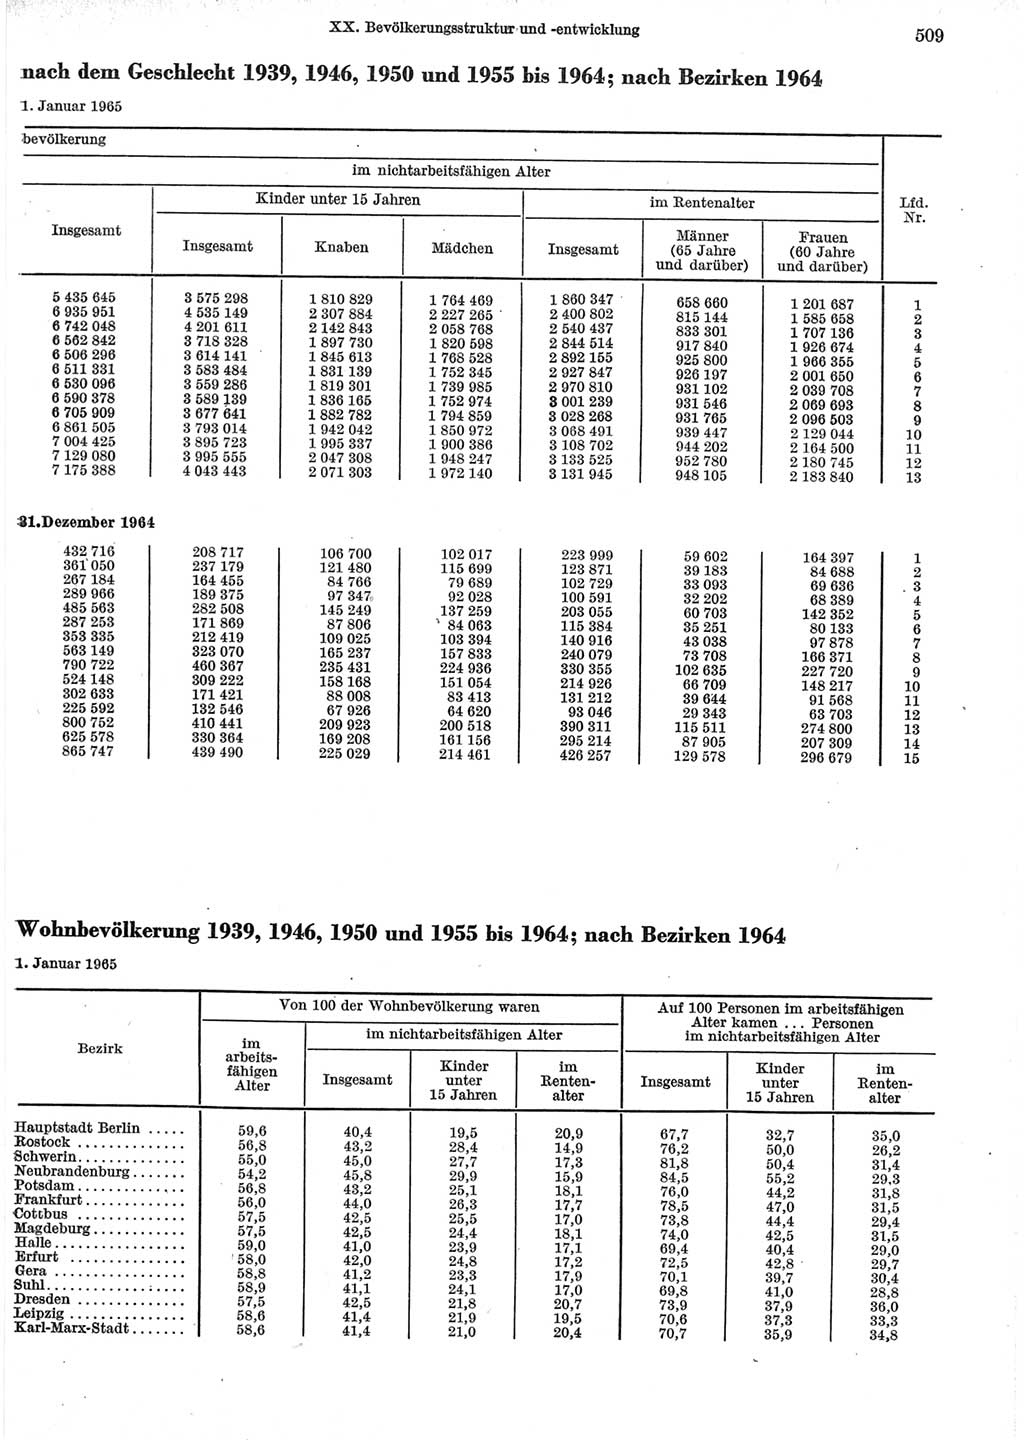 Statistisches Jahrbuch der Deutschen Demokratischen Republik (DDR) 1965, Seite 509 (Stat. Jb. DDR 1965, S. 509)